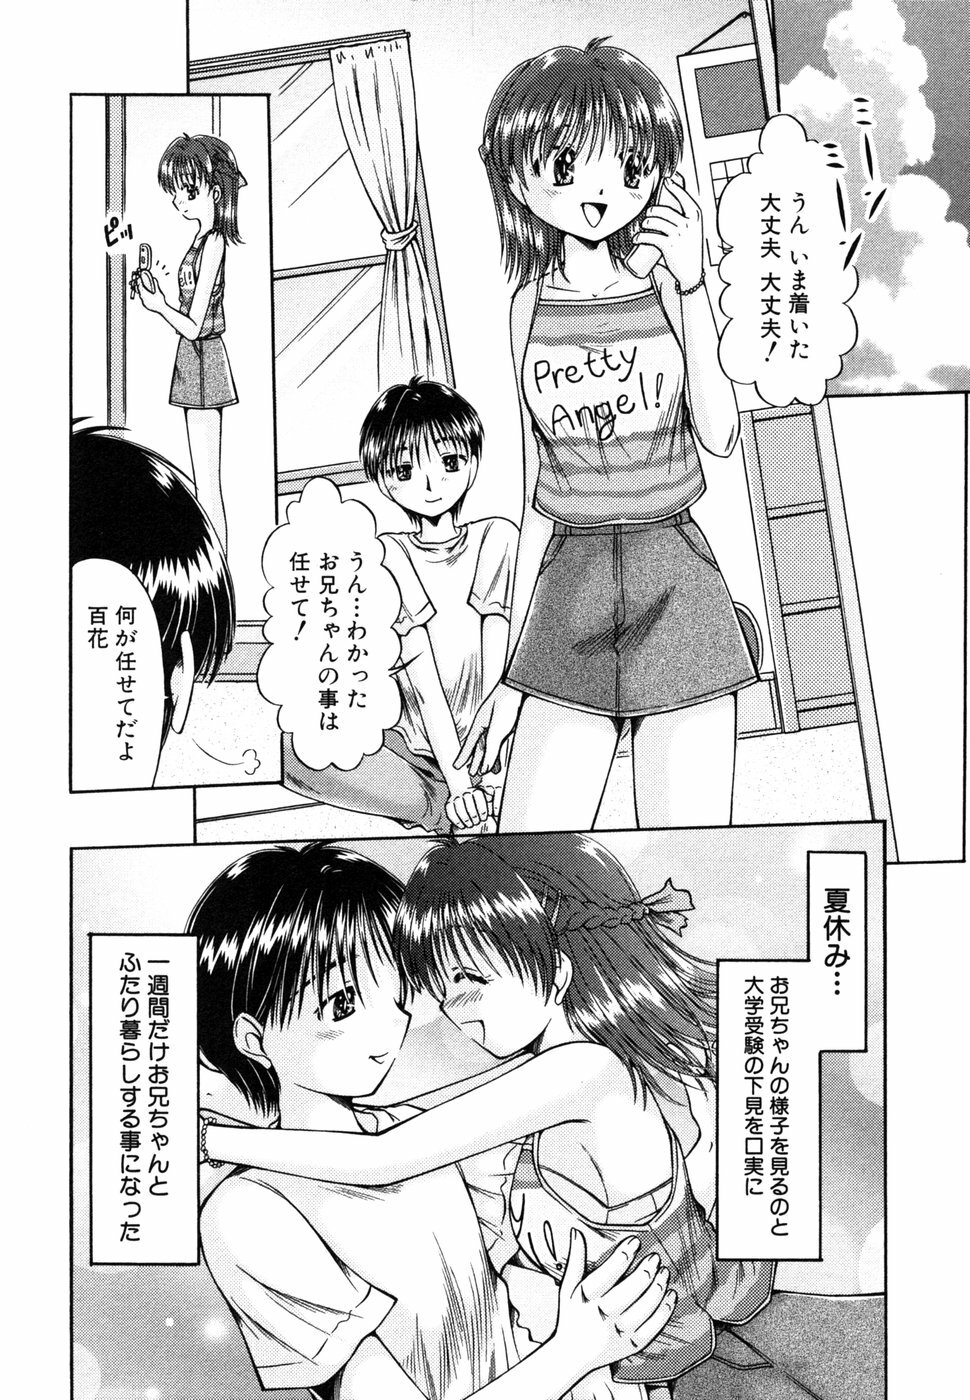 [Anthology] Himitsu no Tobira 5 Kinshin Ai Anthology (The Secret Door) page 23 full